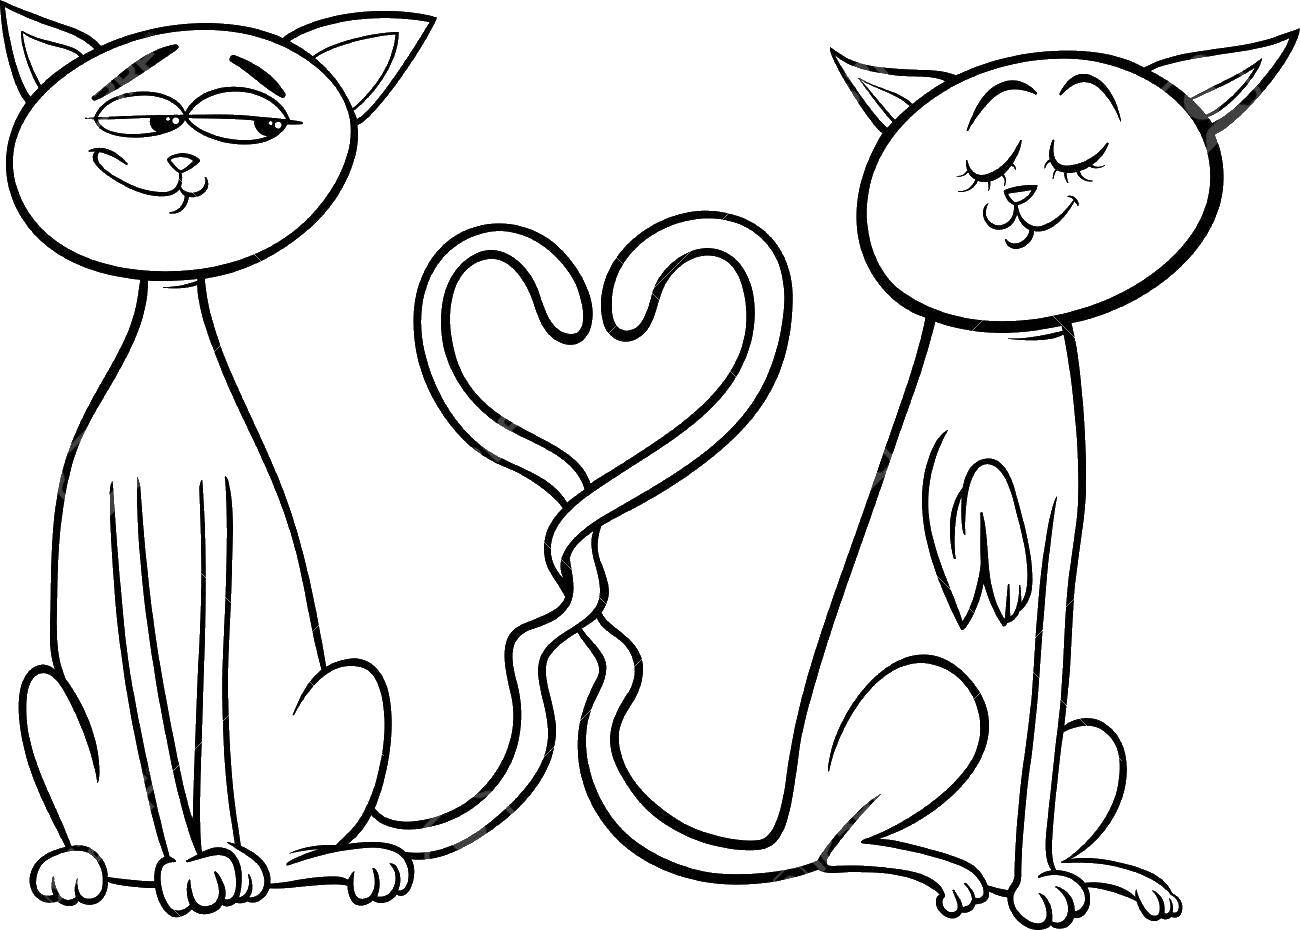 Раскраски кошек на День святого Валентина (кошки)